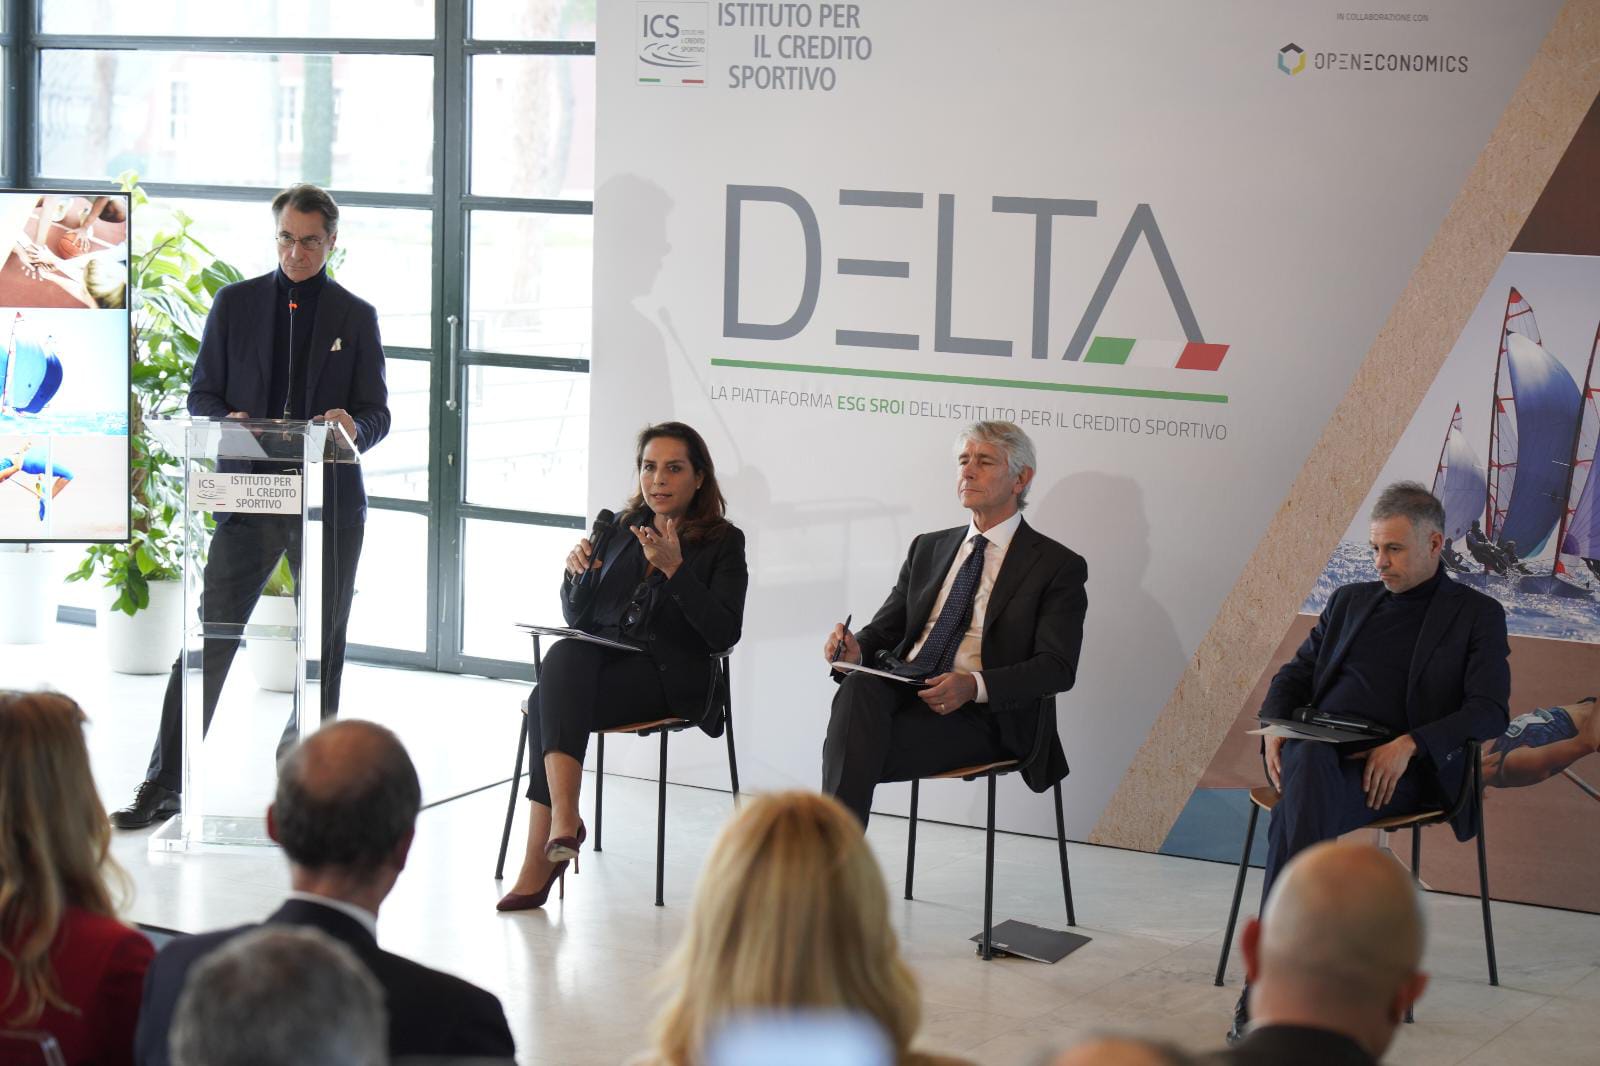 Presentata a Roma la Piattaforma DELTA di Ics